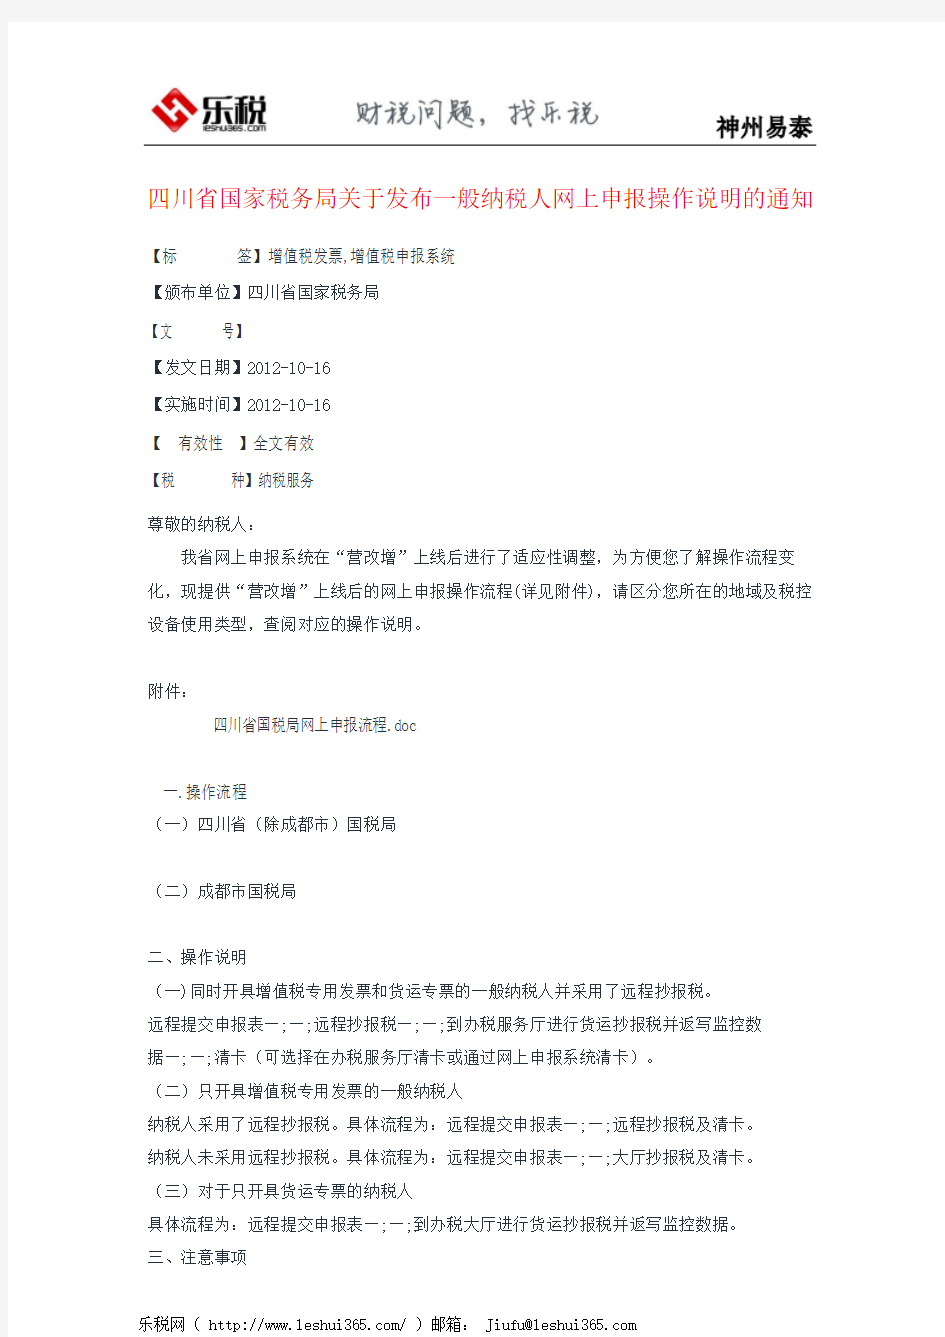 四川省国家税务局关于发布一般纳税人网上申报操作说明的通知